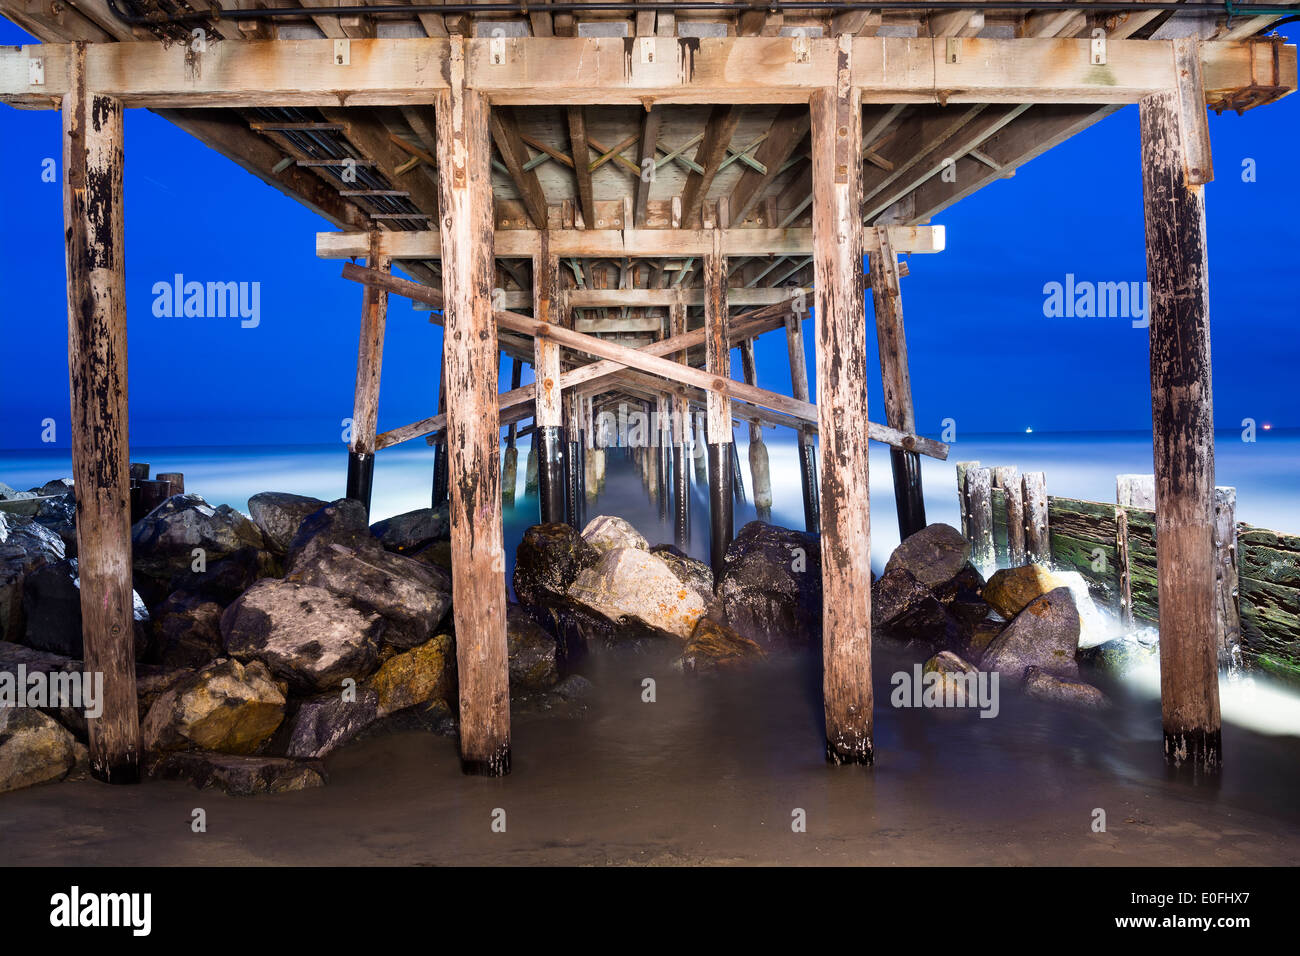 Un'immagine del Balboa Pier in Orange County in California la mattina presto mostra il dettaglio strutturale e bellezza circostante Foto Stock